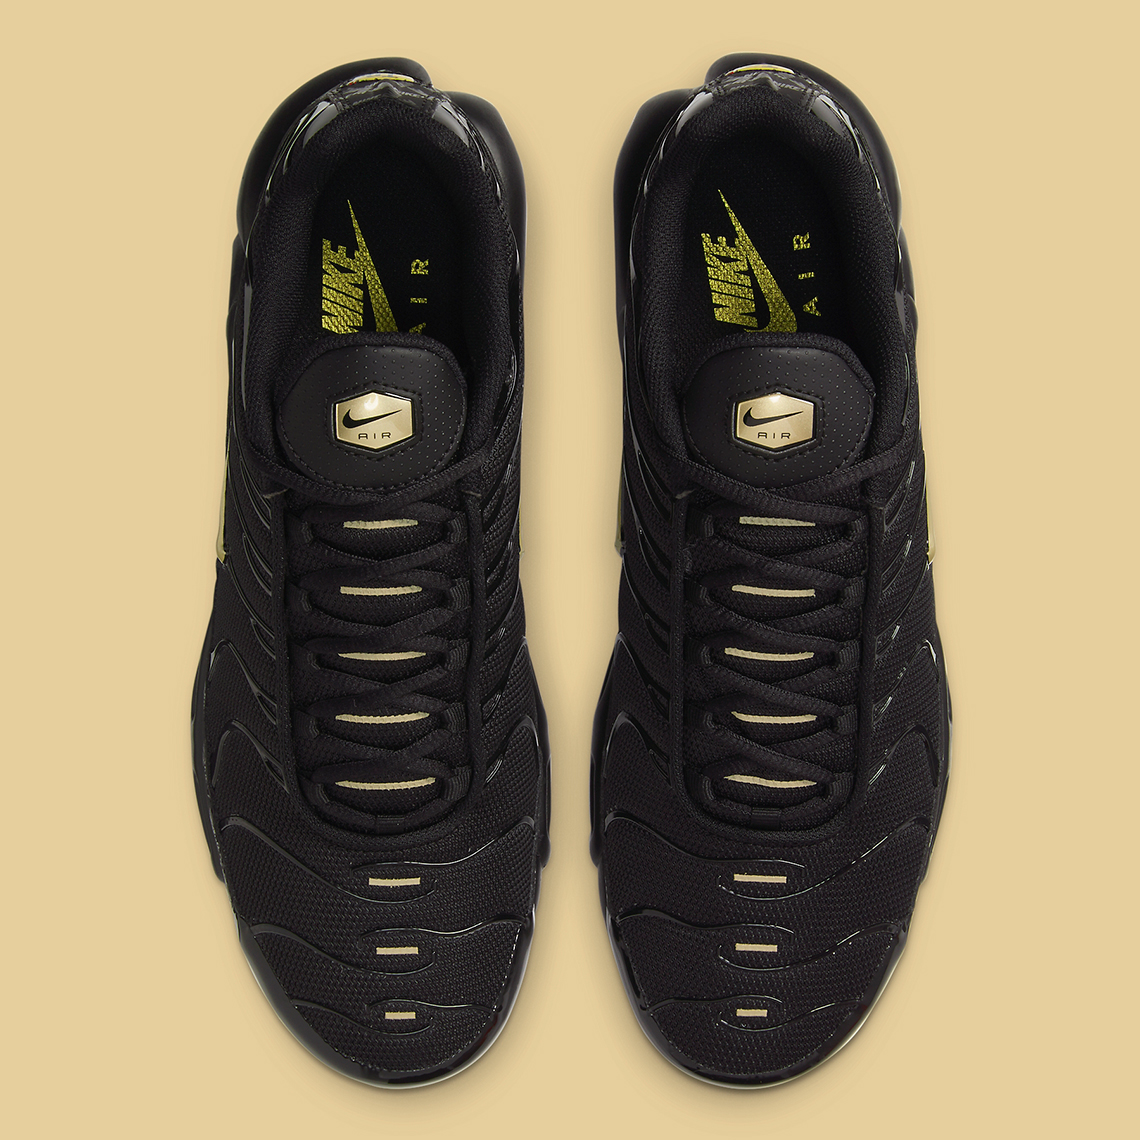 Nike Air Max Plus Black Gold DC4118-001 | SneakerNews.com